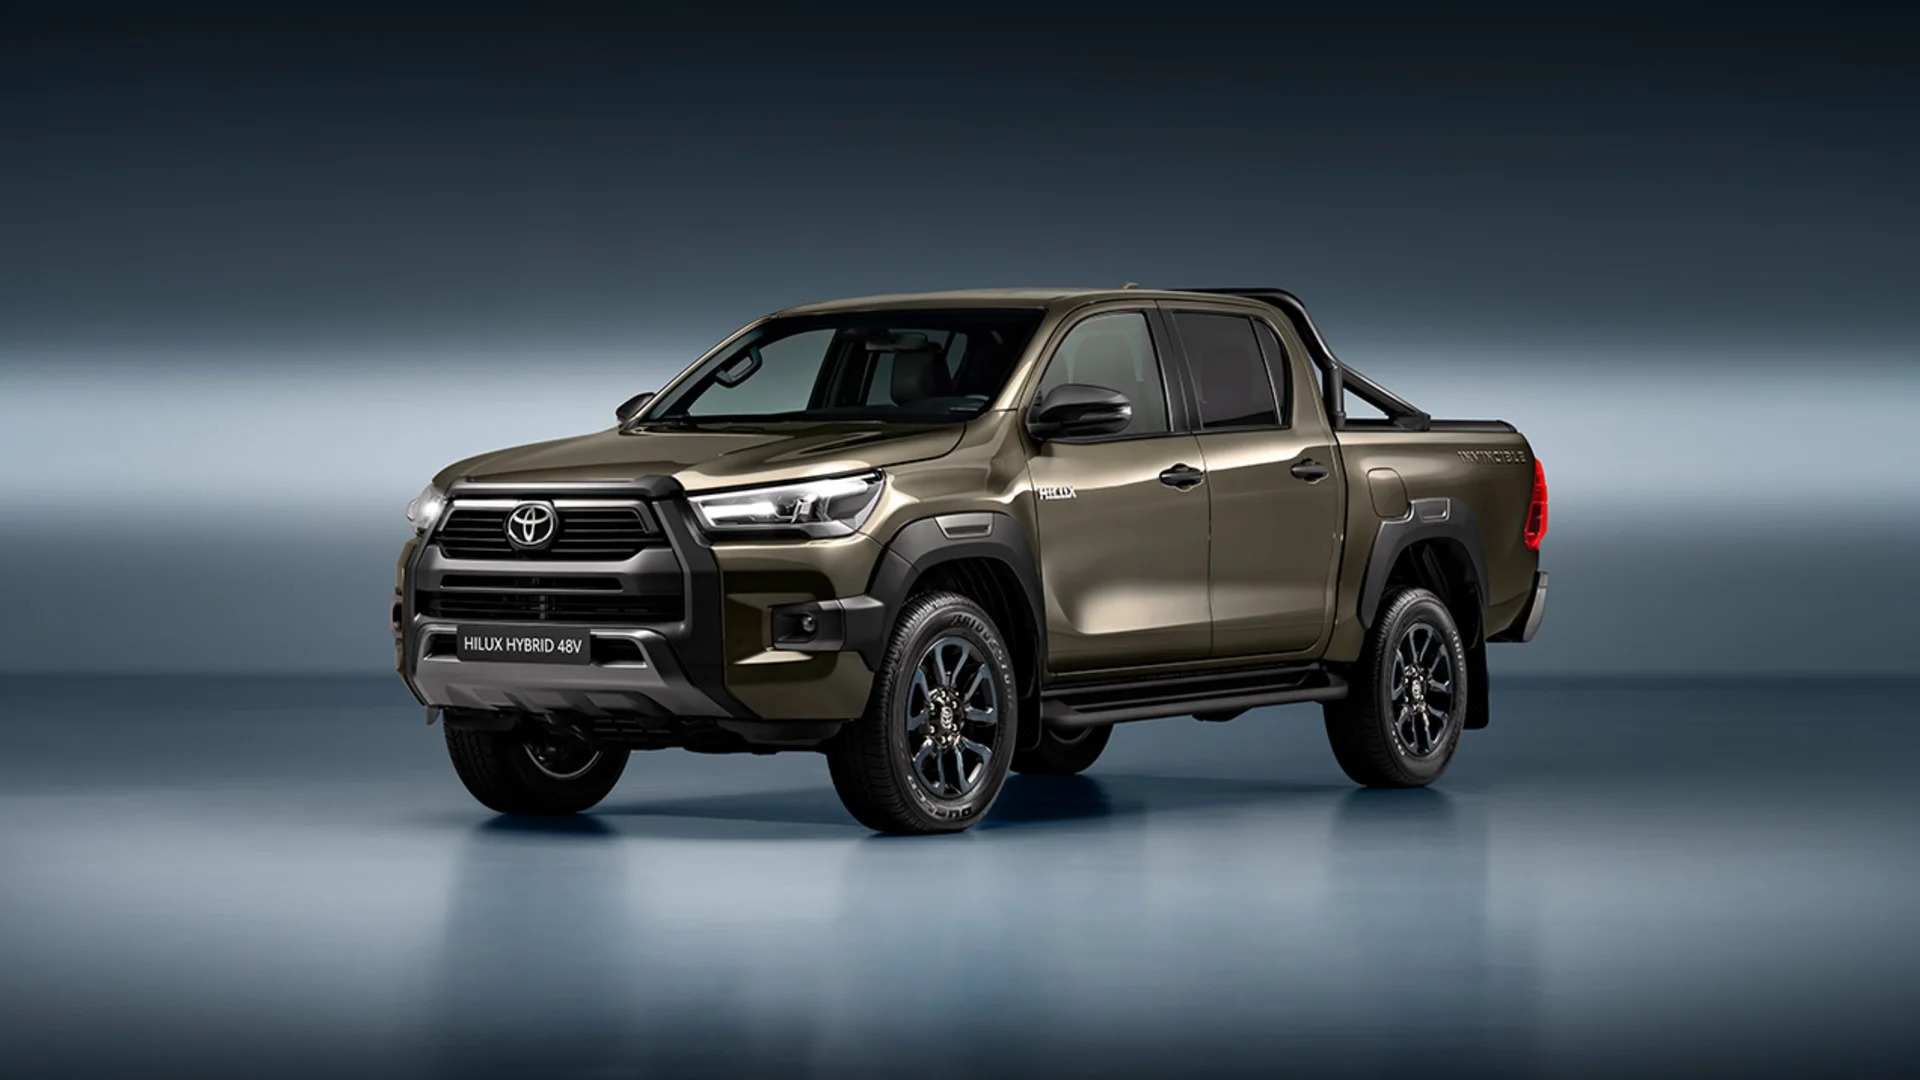 Toyota Hilux hybrid ra mắt: Tiêu thụ 7,1 lít dầu/100km, dùng phụ gia giống Ranger, vượt chuẩn nhiên liệu về Việt Nam- Ảnh 1.